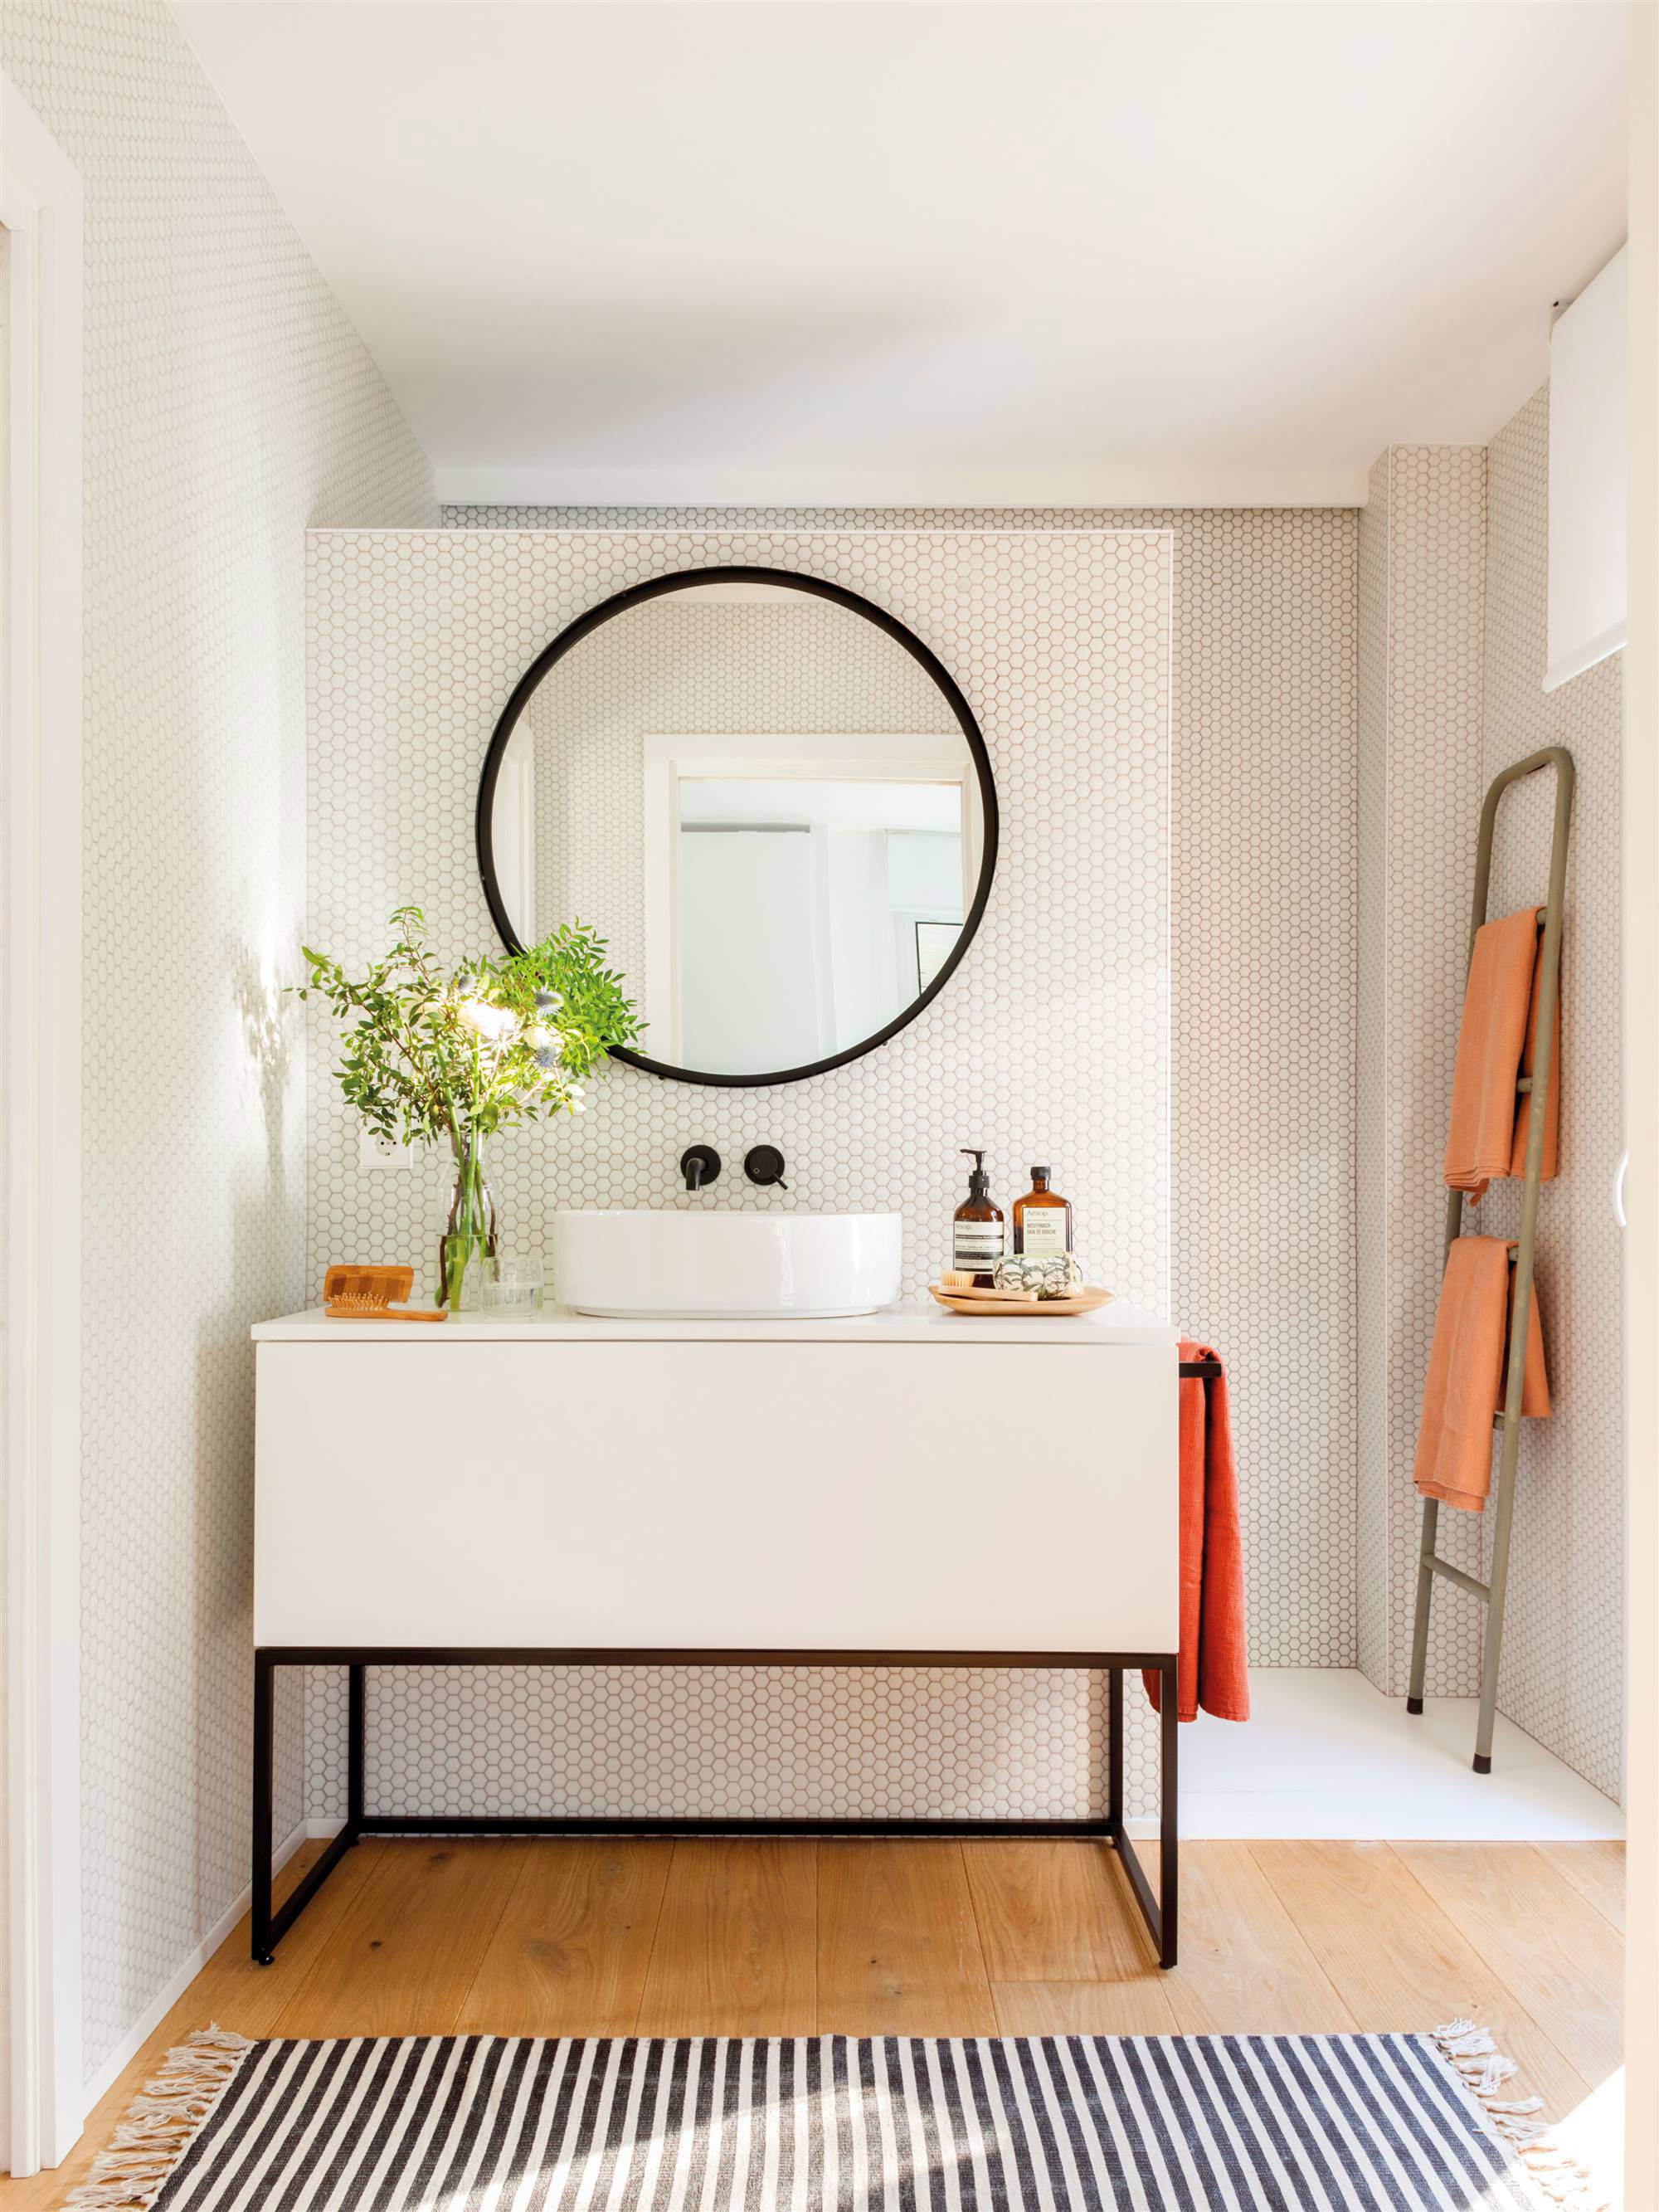 Baño con mueble en blanco y negro y frente de azulejos tipo panal.